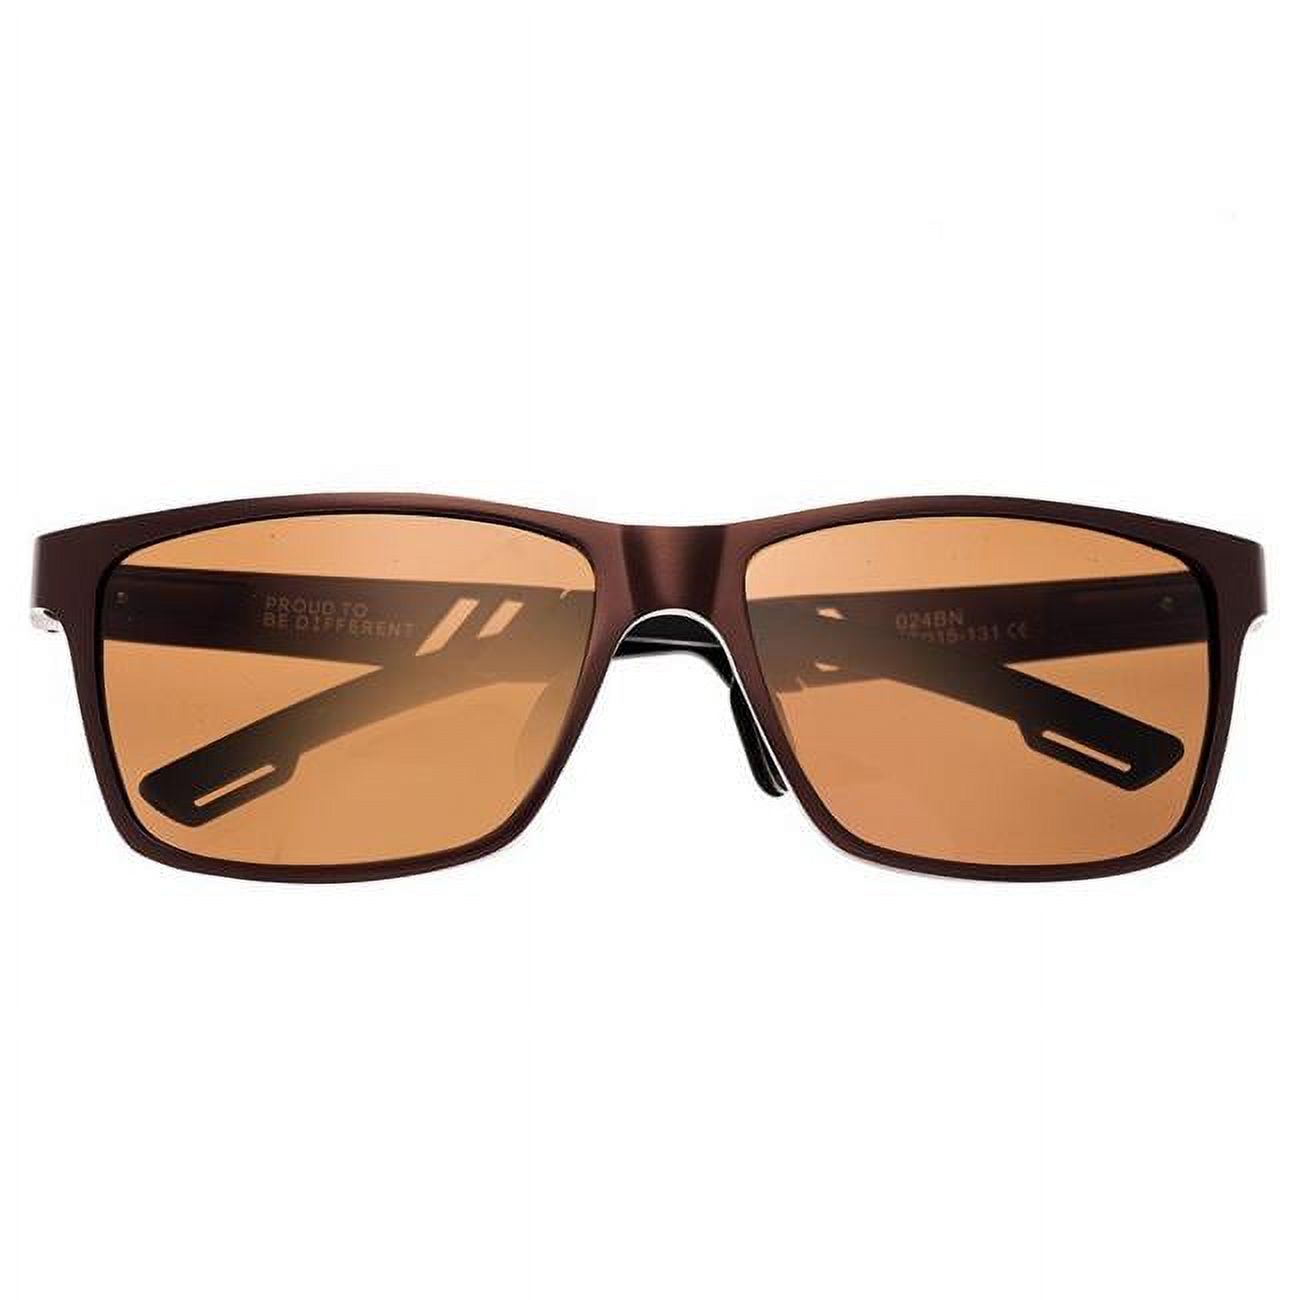 Breed Sunglasses 024BN Pyxis Titanium Sunglasses&#44; Brown - image 1 of 3